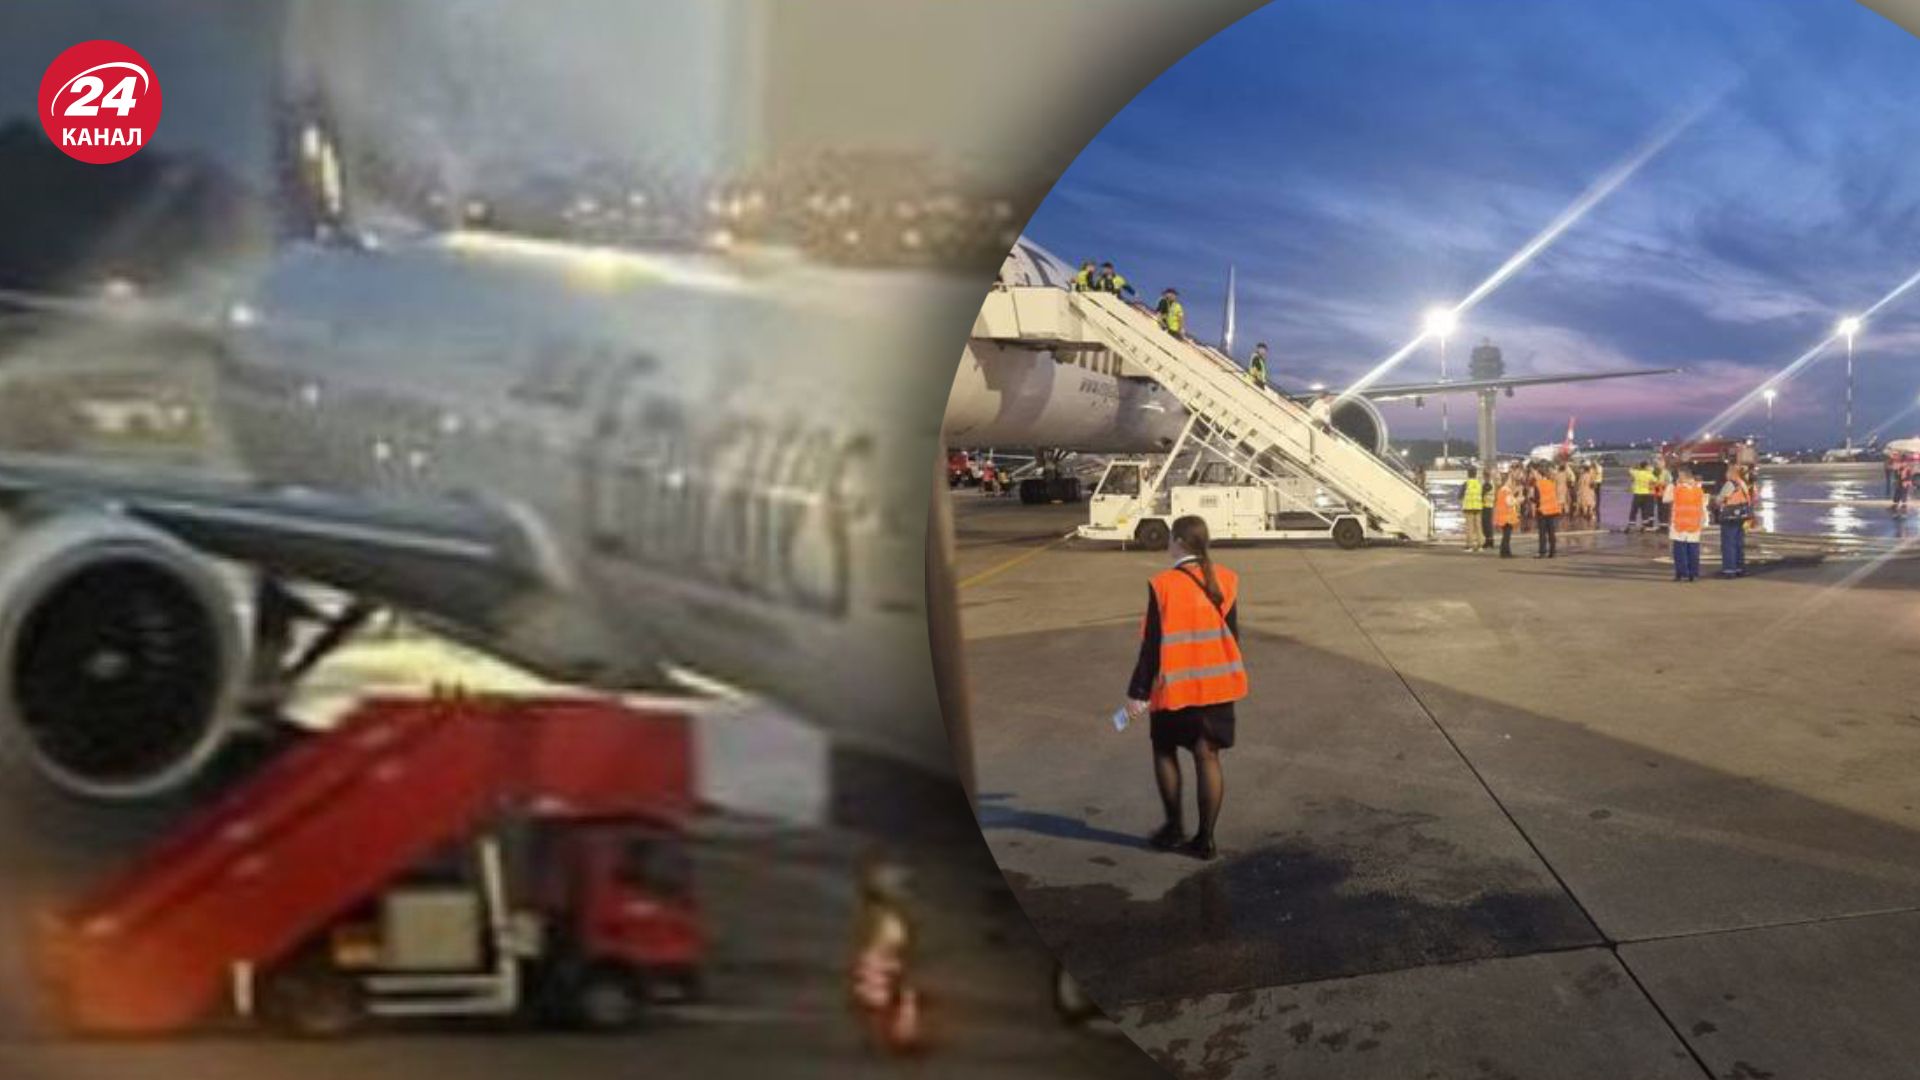 В Санкт-Петербурге загорелся пассажирский самолет - фото, видео